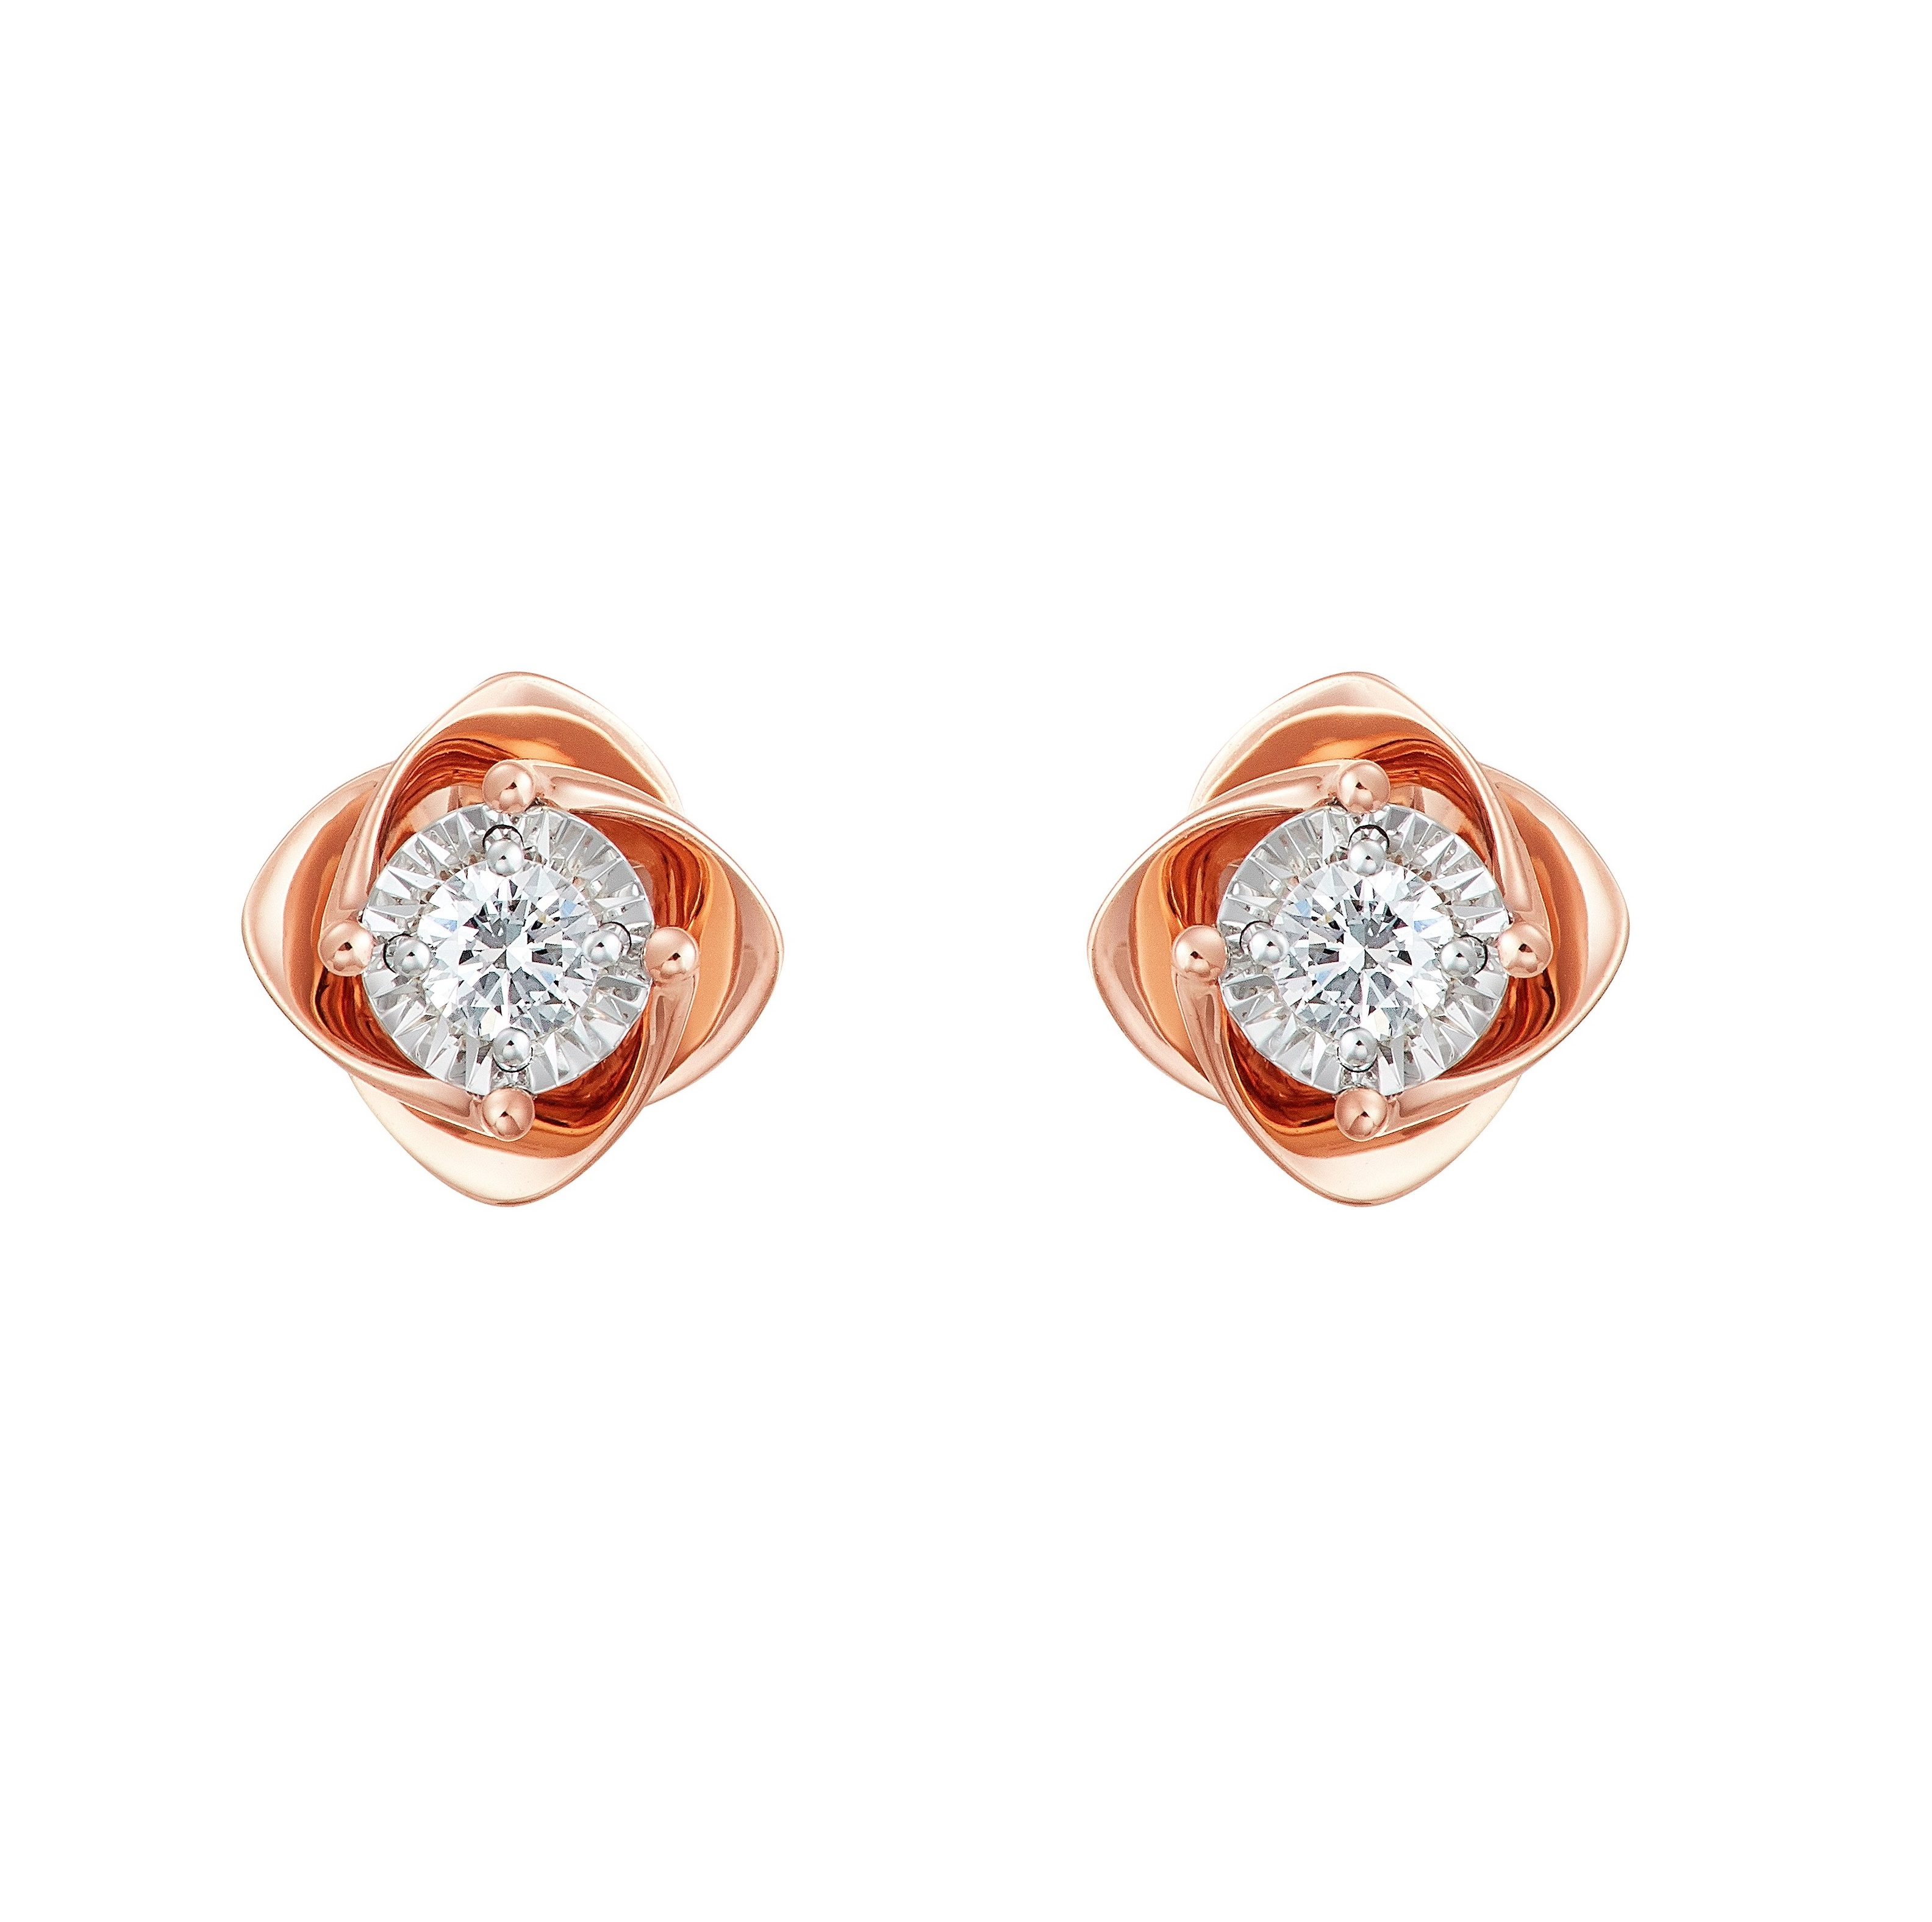 Rosy Whisper 18K White Gold Diamond Earrings